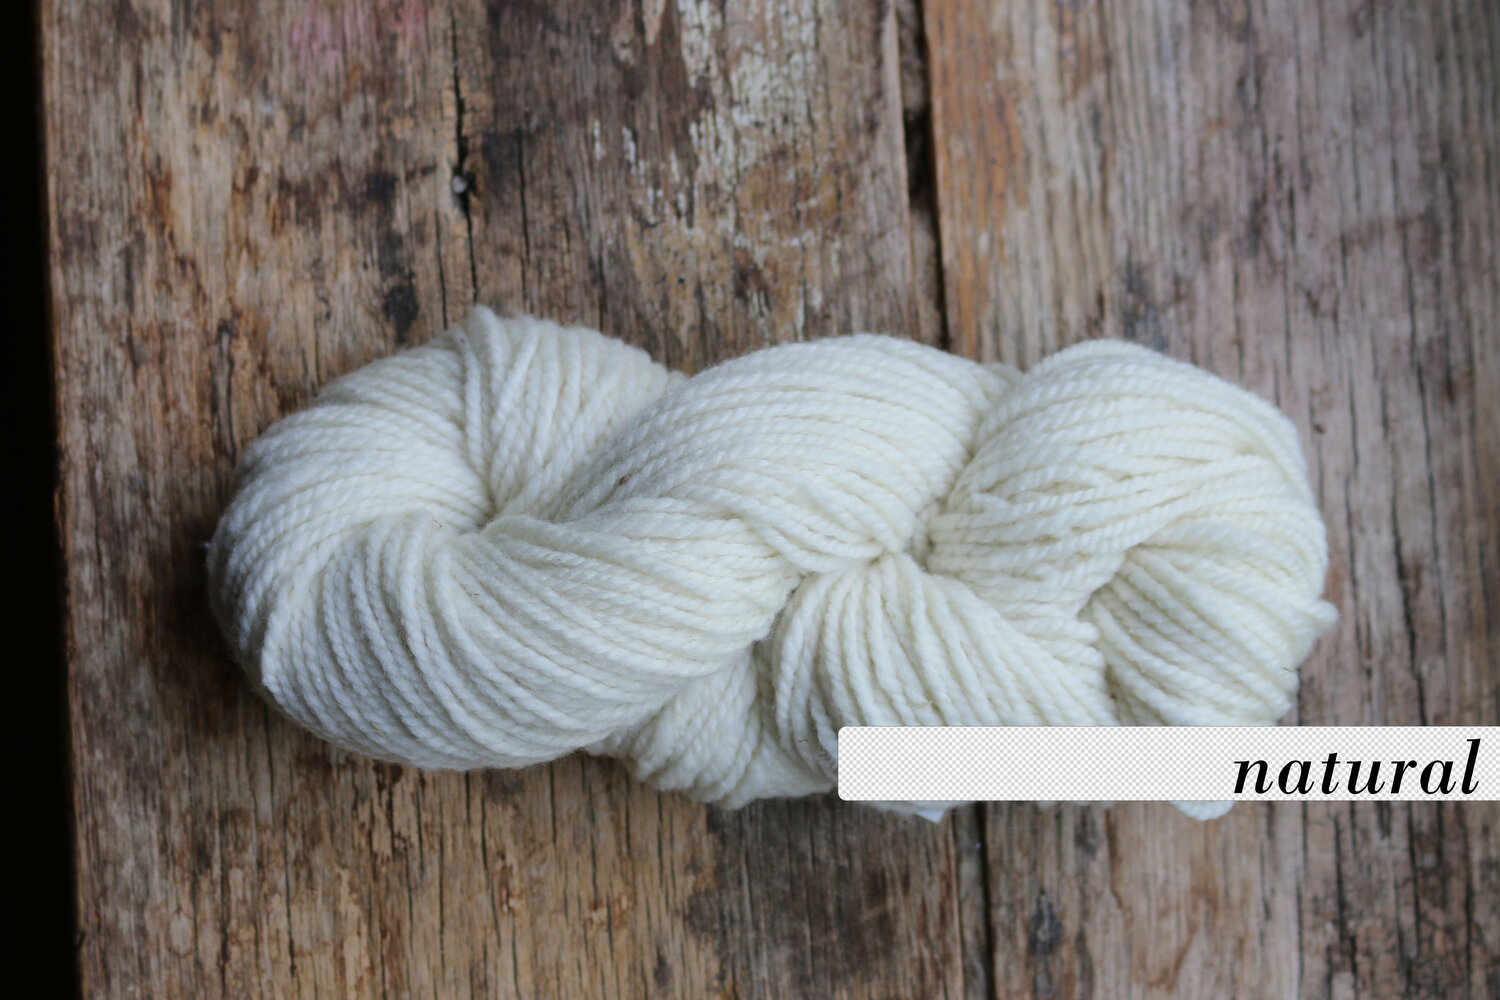 Yarn: 100% Merino Wool [worsted] — Michigan Merinos merino wool hats,  merino wool socks, grown and made in the USA